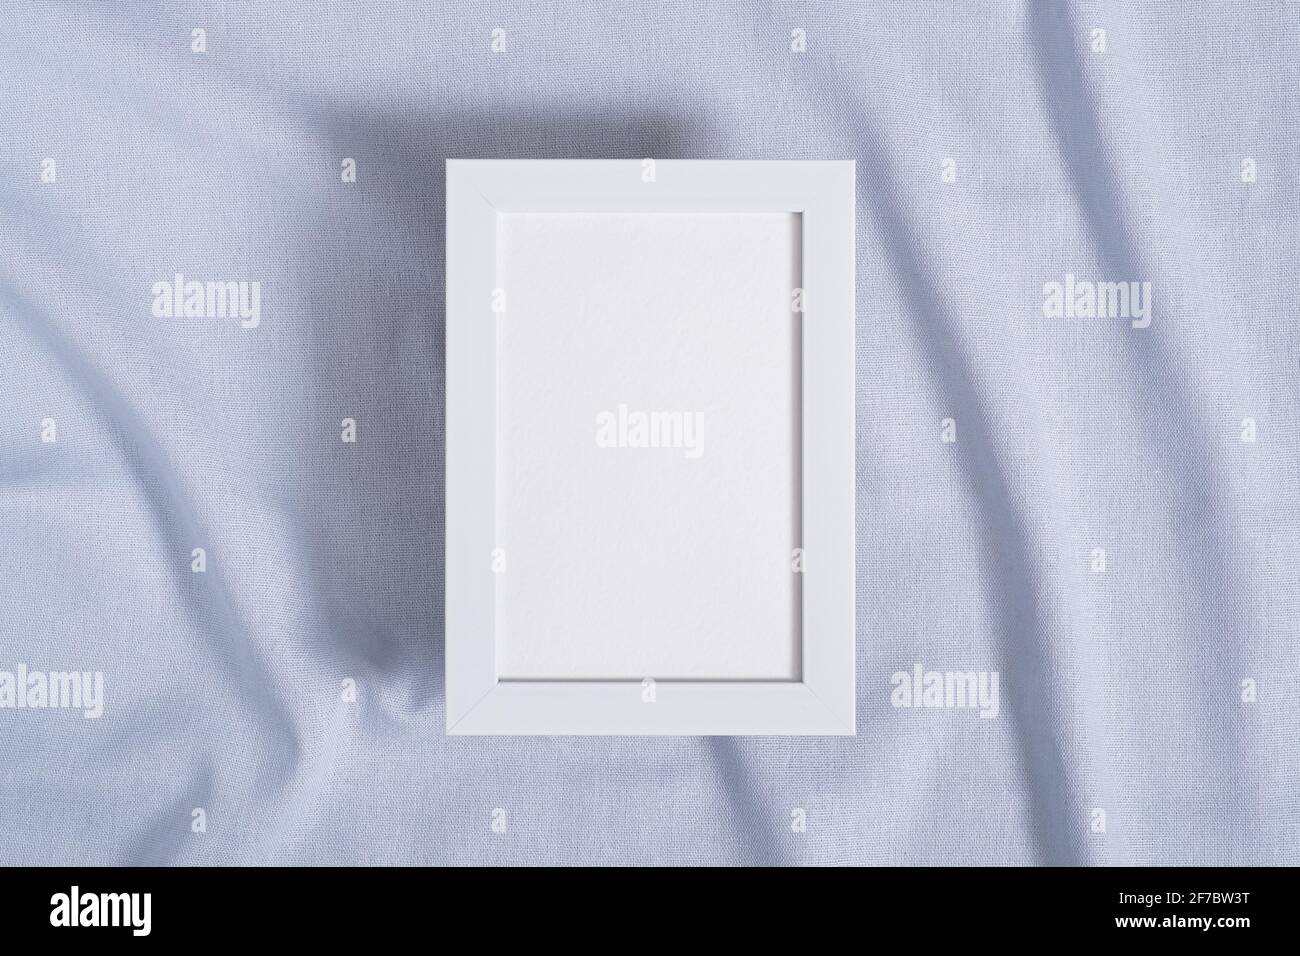 Cornice fotografica con mockup di carta bianca su neutro blu tessuto colorato Foto Stock